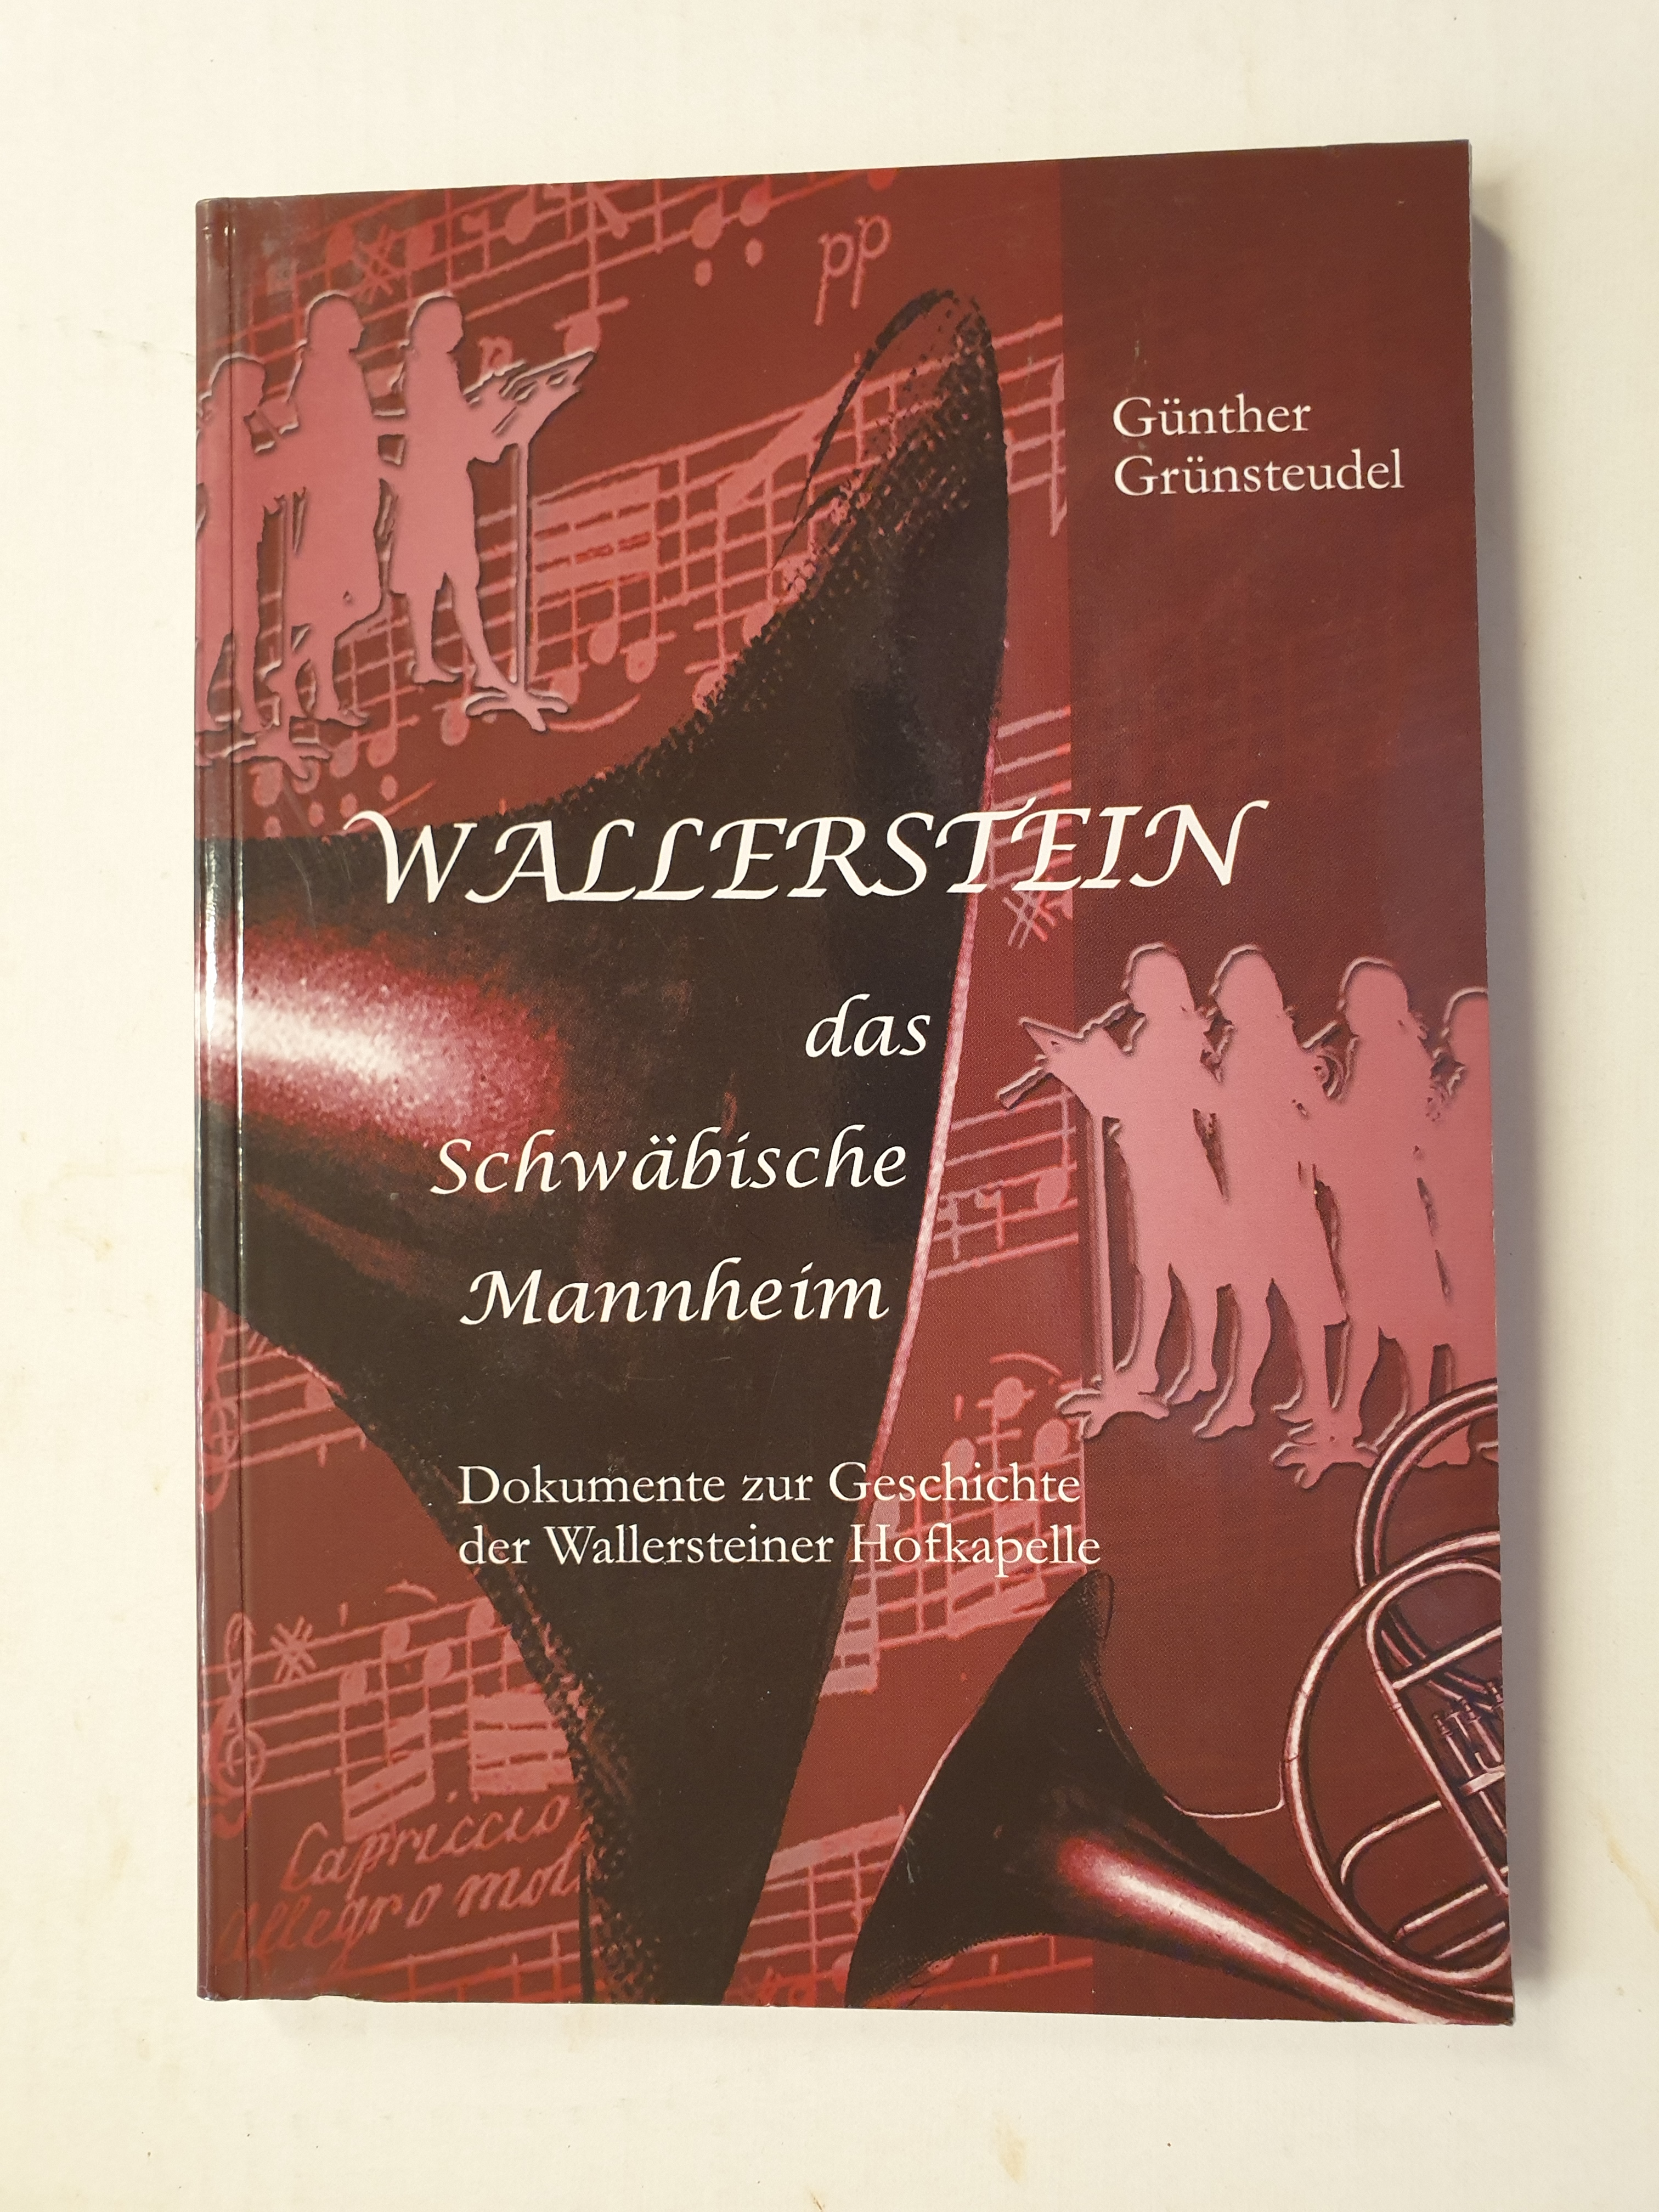 Wallerstein: Das Schwäbische Mannheim : Text- und Bilddokumente zur Geschichte der Wallersteiner Hofkapelle (1745-1825)